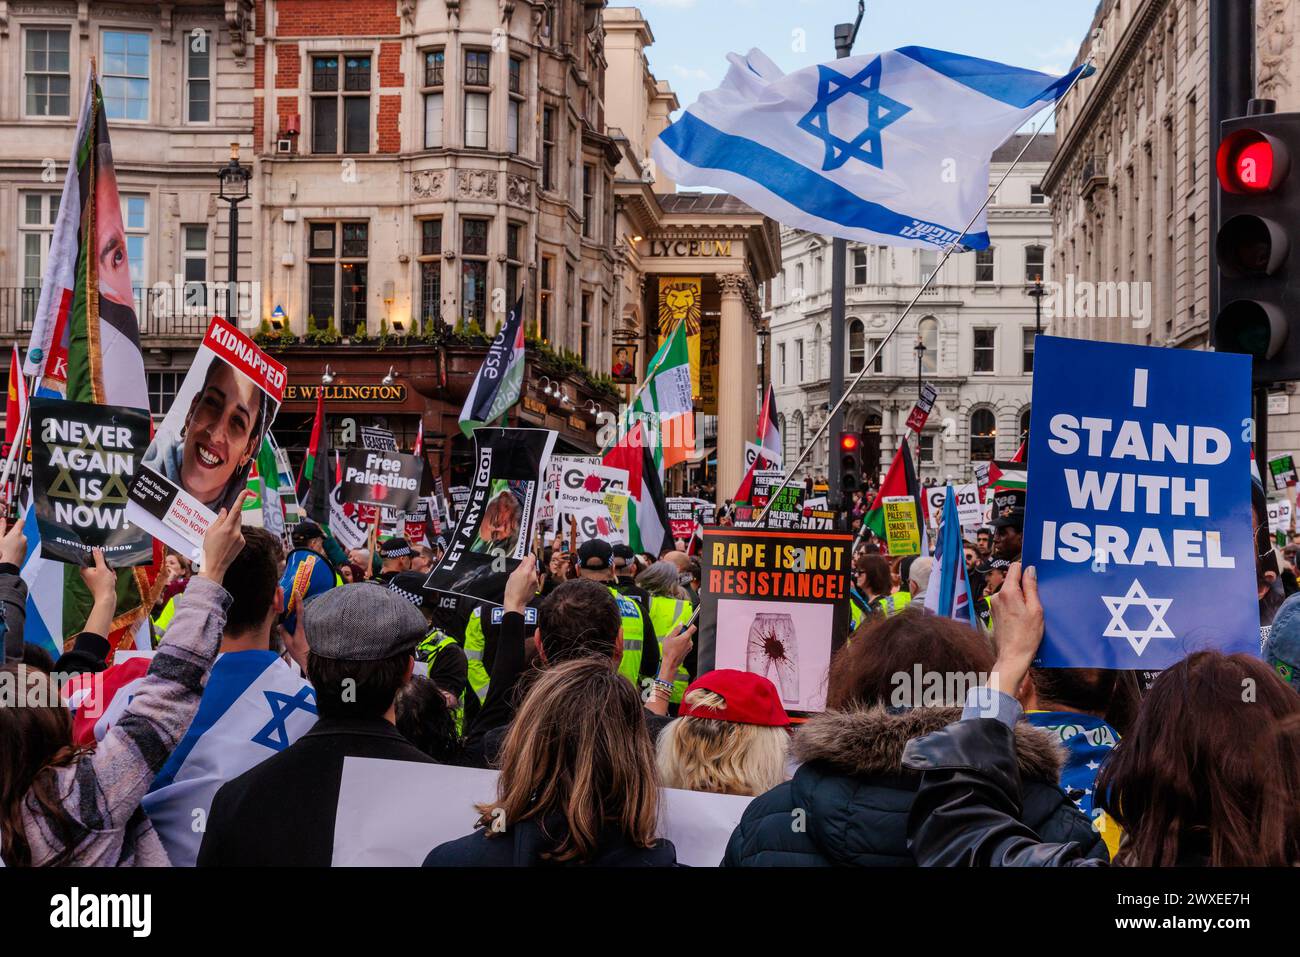 Somerset House, Londres, Reino Unido. 30 de marzo de 2024. En una contraprotesta formal pro-Israel / anti Hamás, un colectivo de residentes británicos preocupados y ciudadanos de todas las religiones que dicen 'basta' y están tomando una posición unida contra el creciente odio en las calles de Londres. Organizada por el Proyecto Cadena Humana 7/10 en respuesta a casi 6 meses de marchas pro-palestinas, esta protesta pacífica y no provocativa, tiene como objetivo recuperar Londres, que se ha convertido en un área prohibida para los judíos y muchos otros, debido al discurso de odio, intimidación y violencia. Foto de Amanda Rose/Alamy Live News Foto de stock